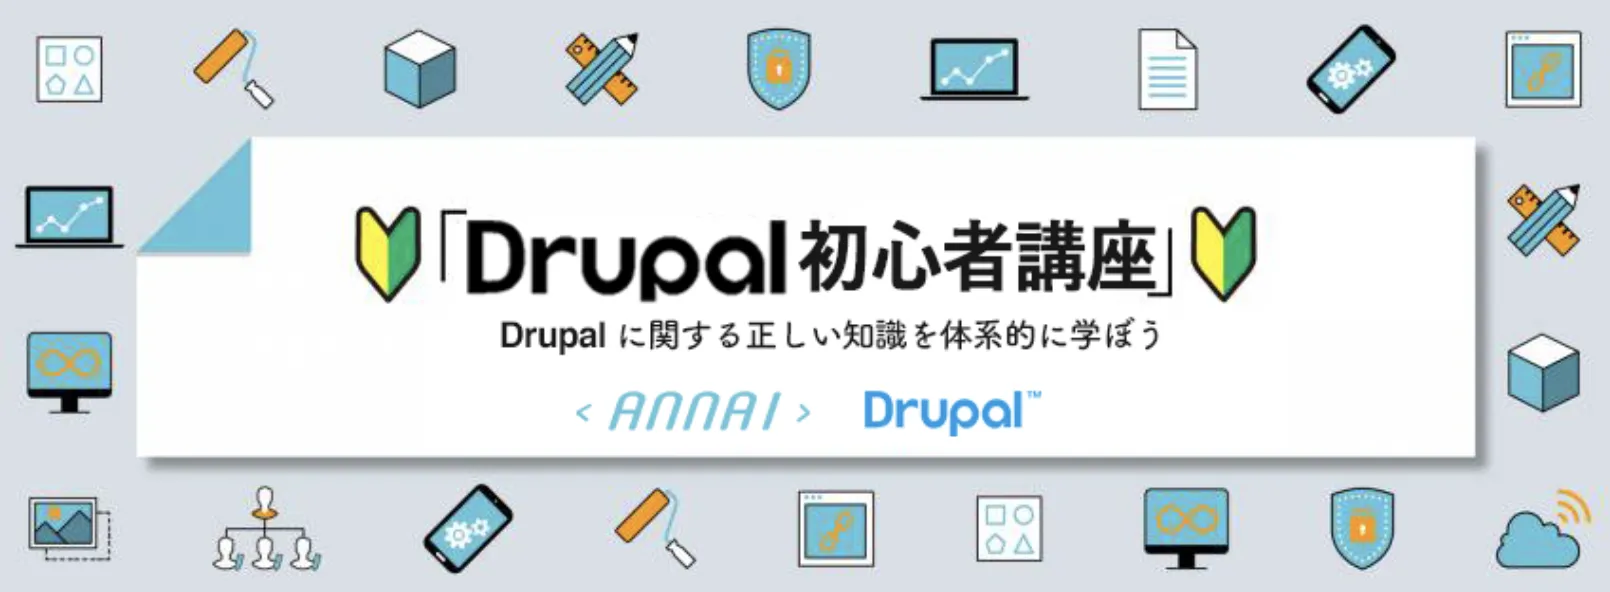 第 3 回 Drupal の特徴